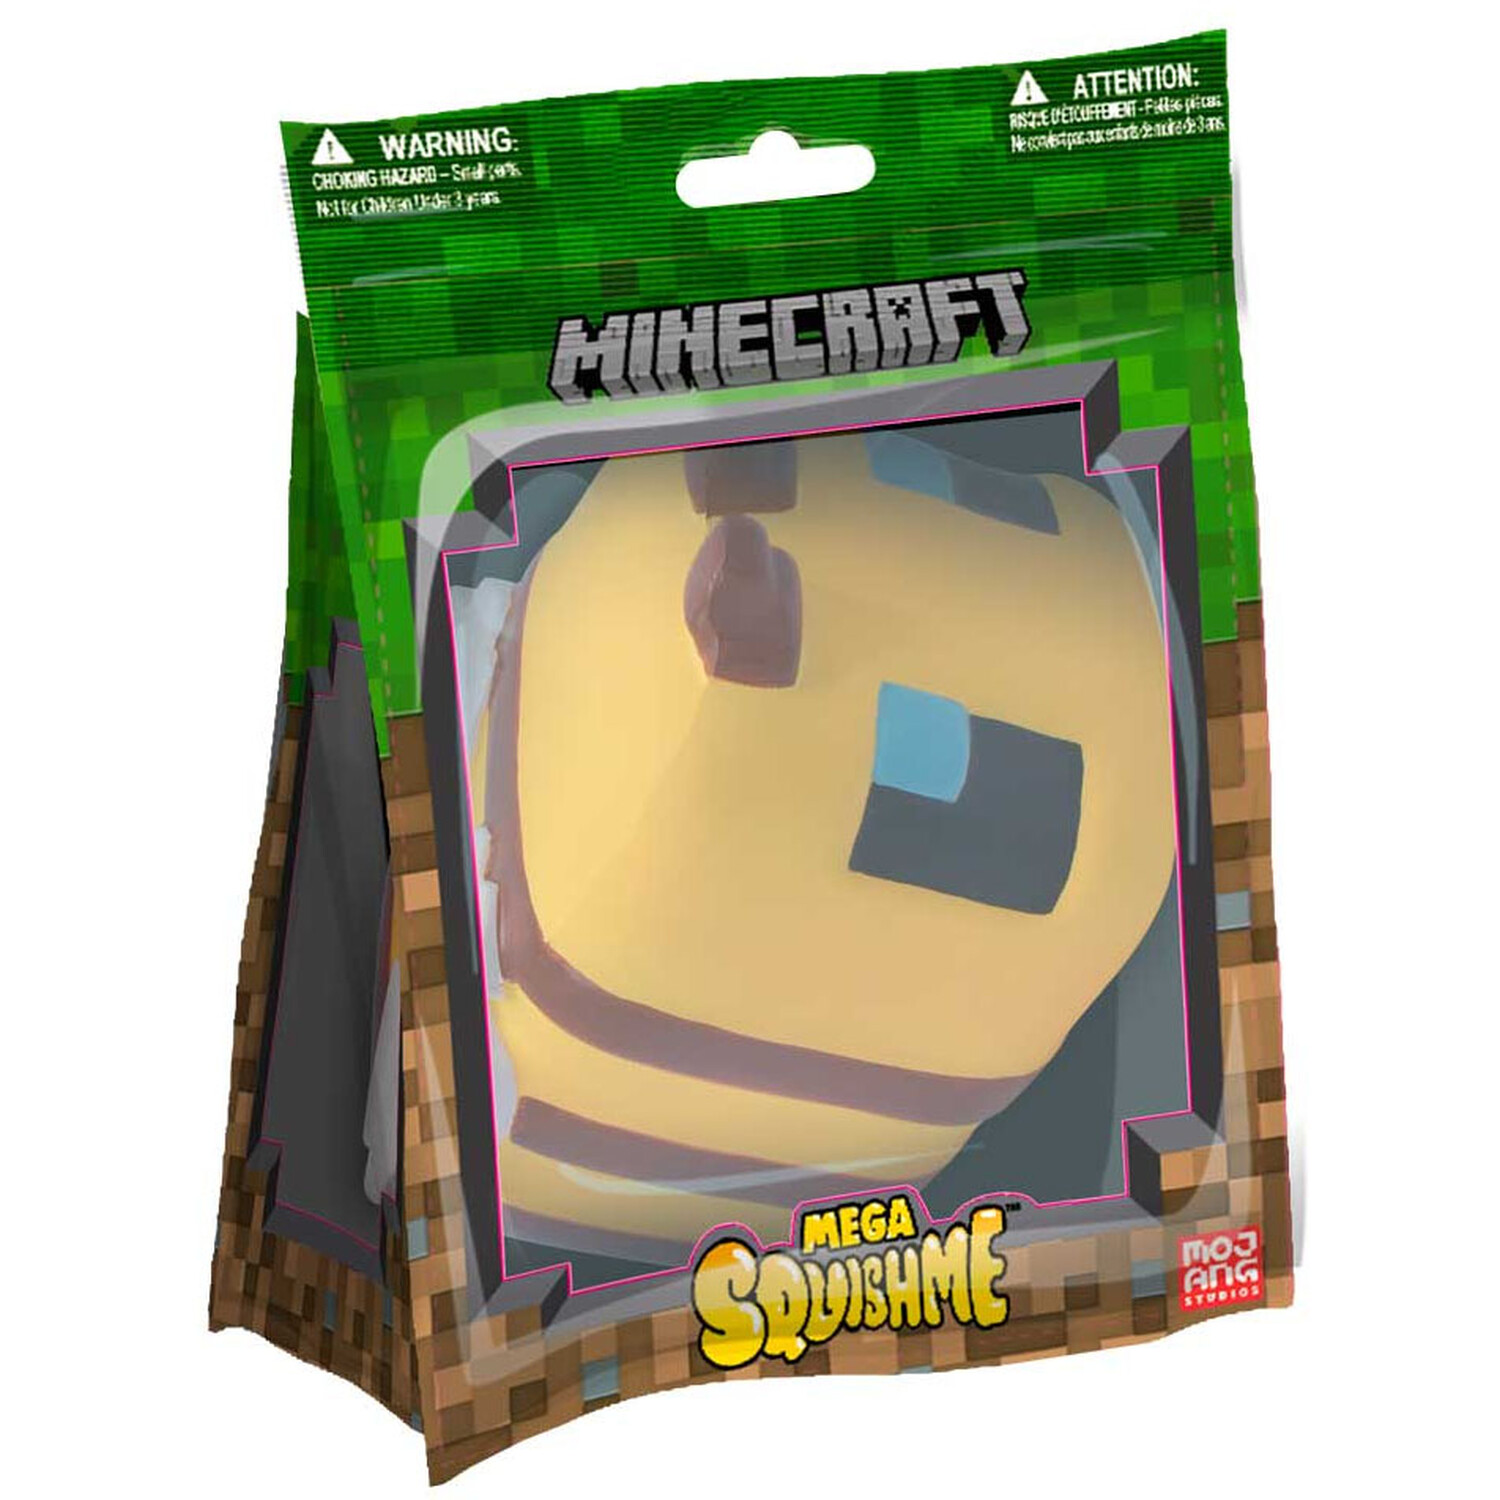 Minecraft Mega SquishMe Image 2